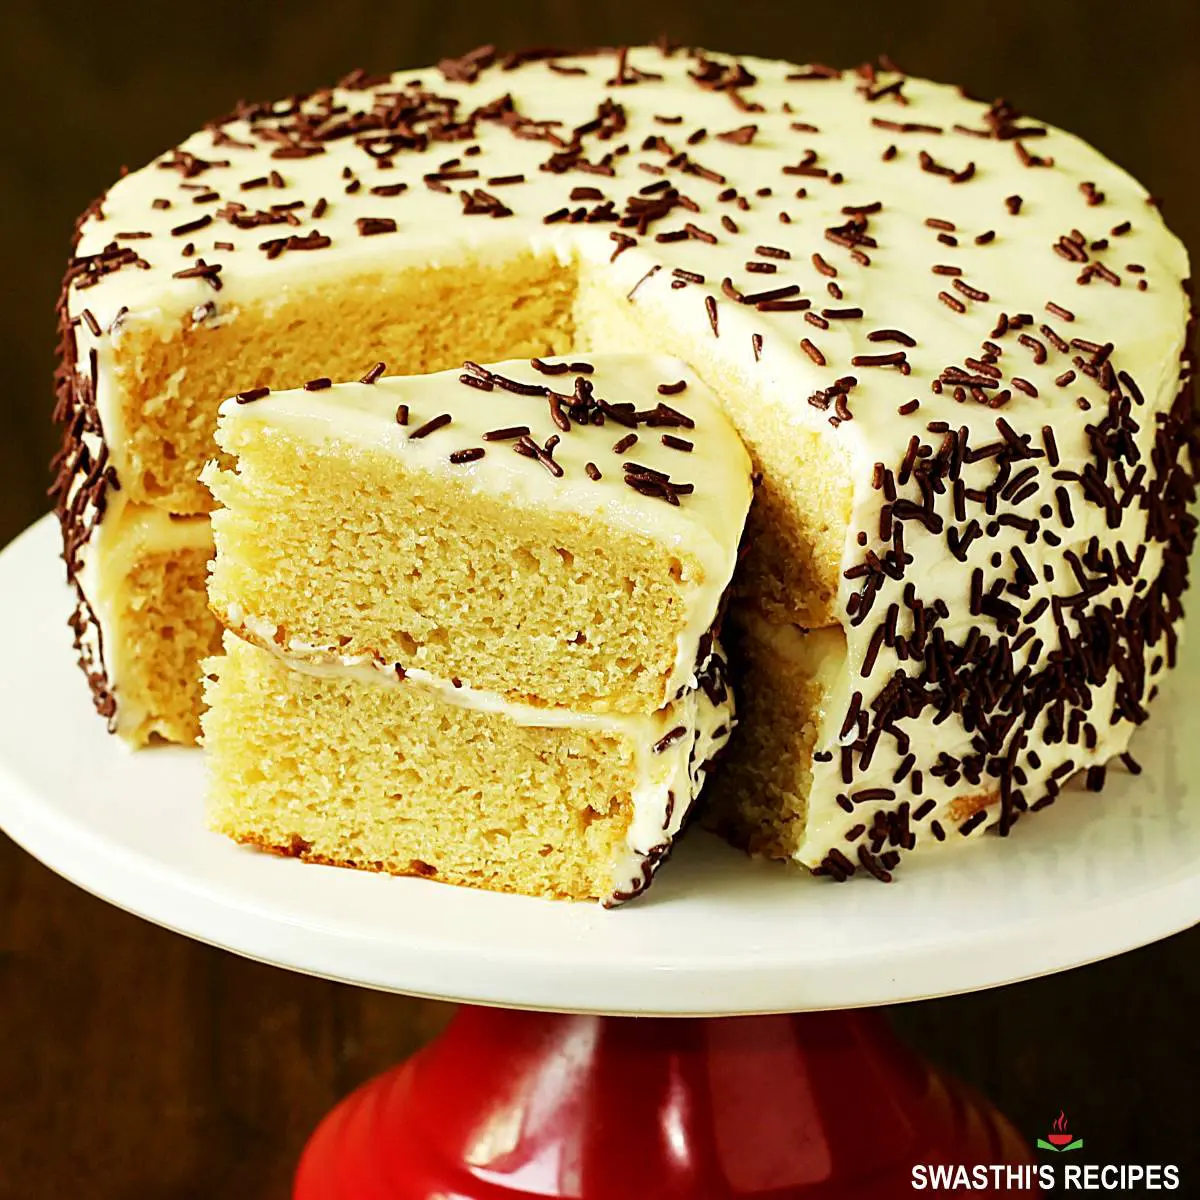 BEST Chocolate Sponge Cake Recipe (So Fluffy & Moist!)